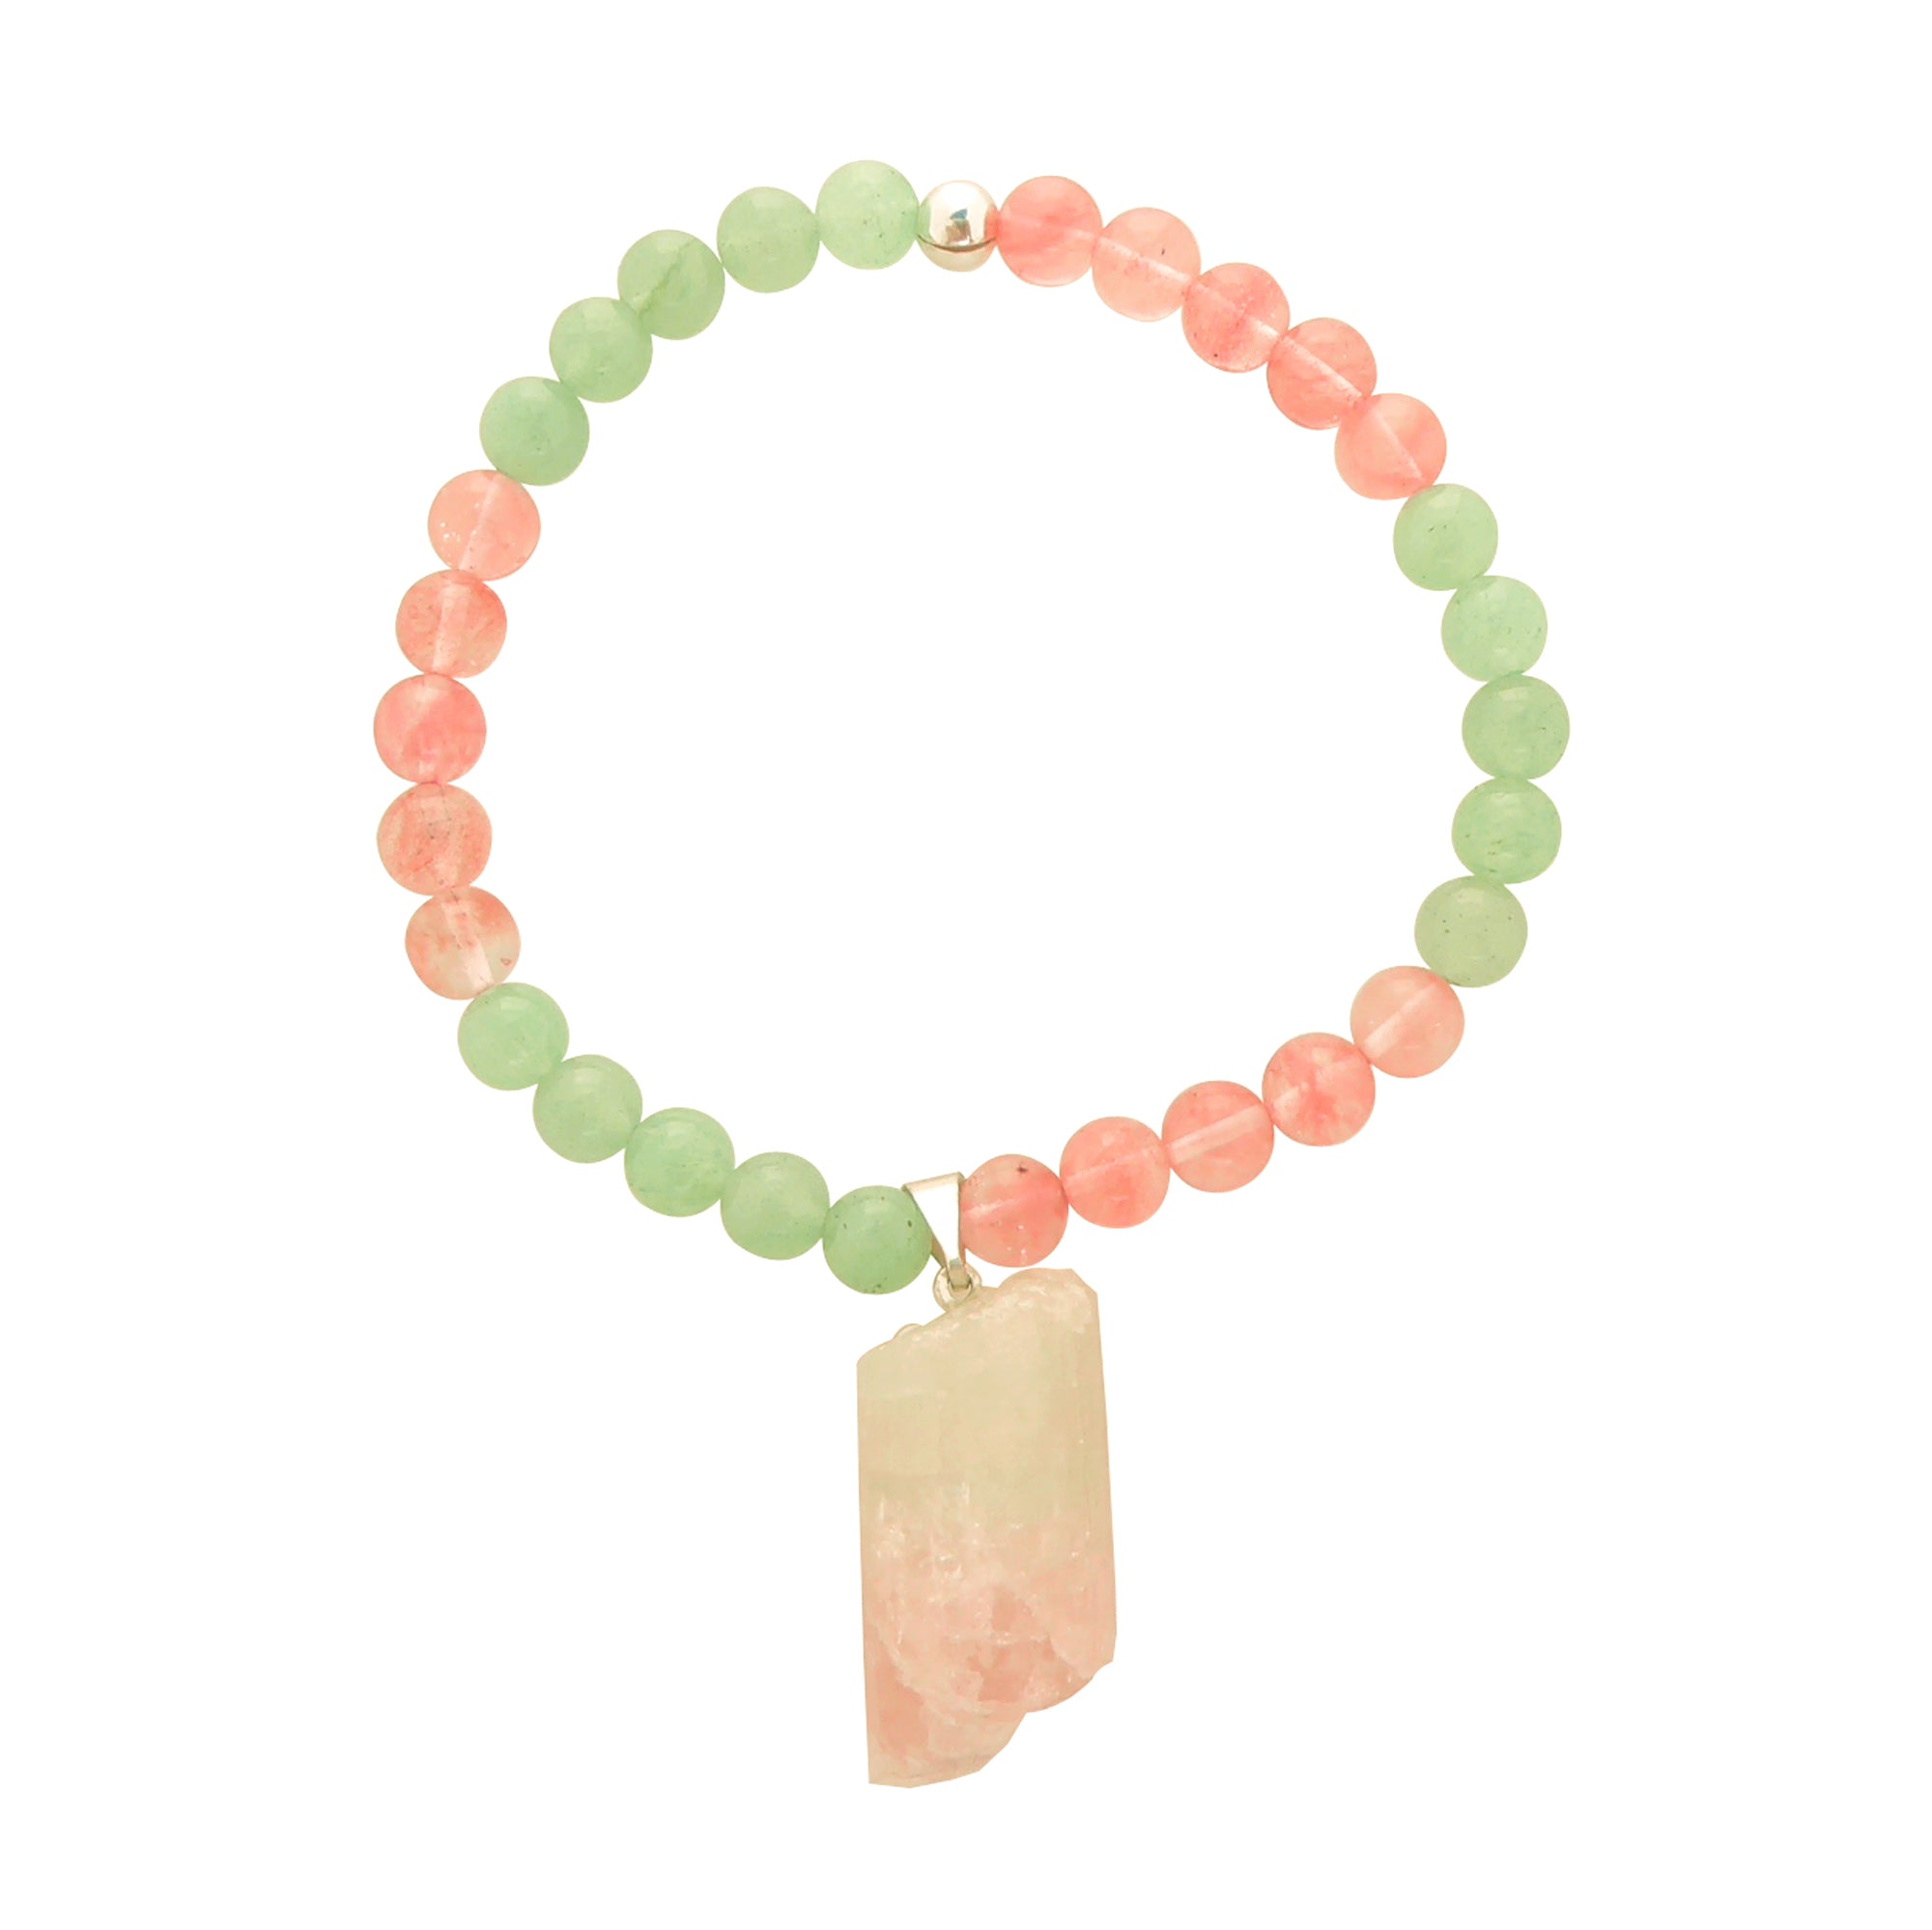 Watermelon tourmaline cherry quartz green aventurine bracelet by Jenny Dayco 1